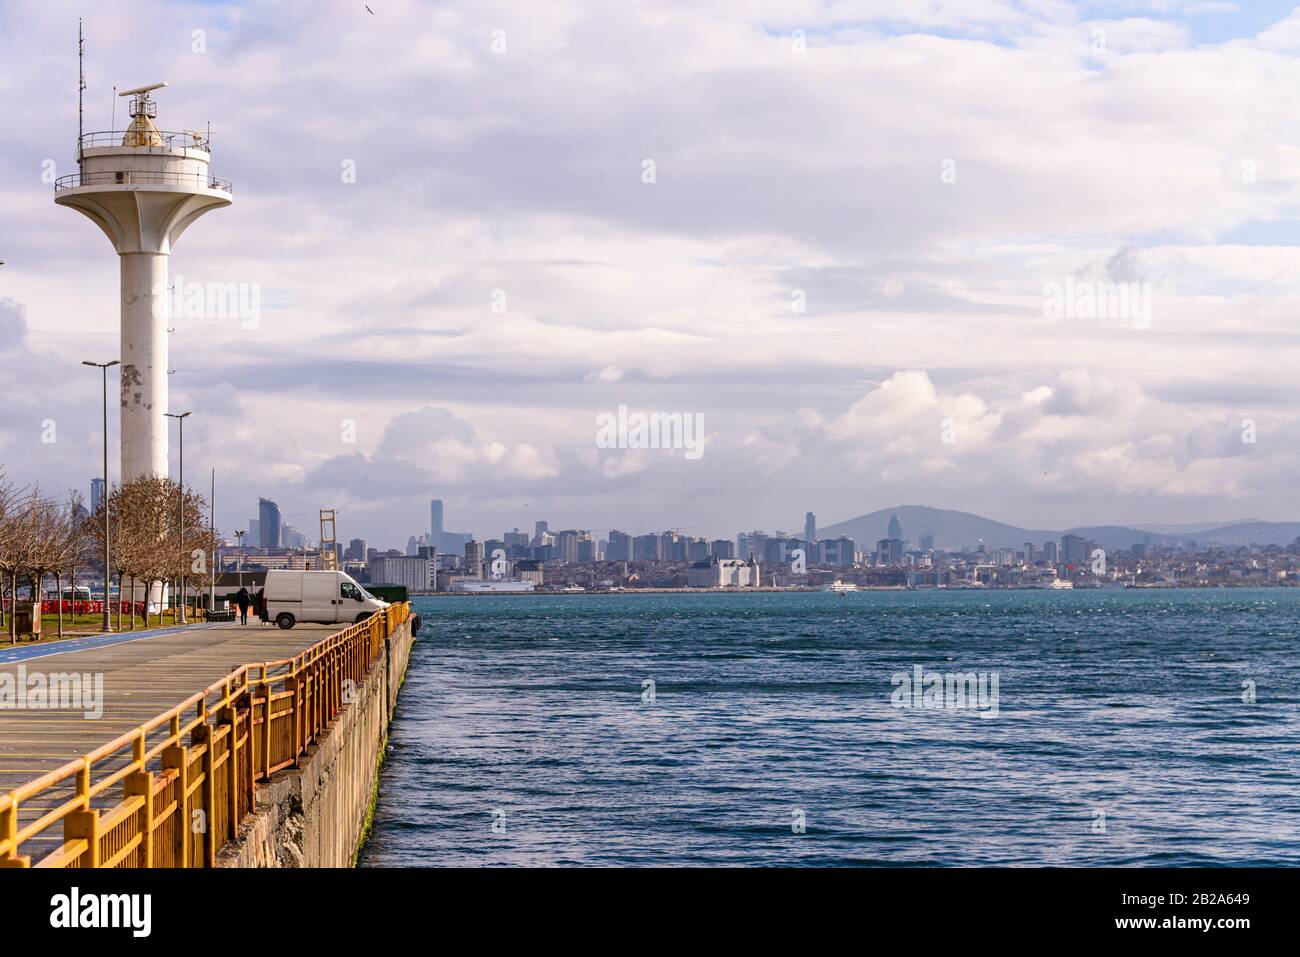 Torre de radar en la oficina principal del puerto, Estambul, Turquía Foto de stock